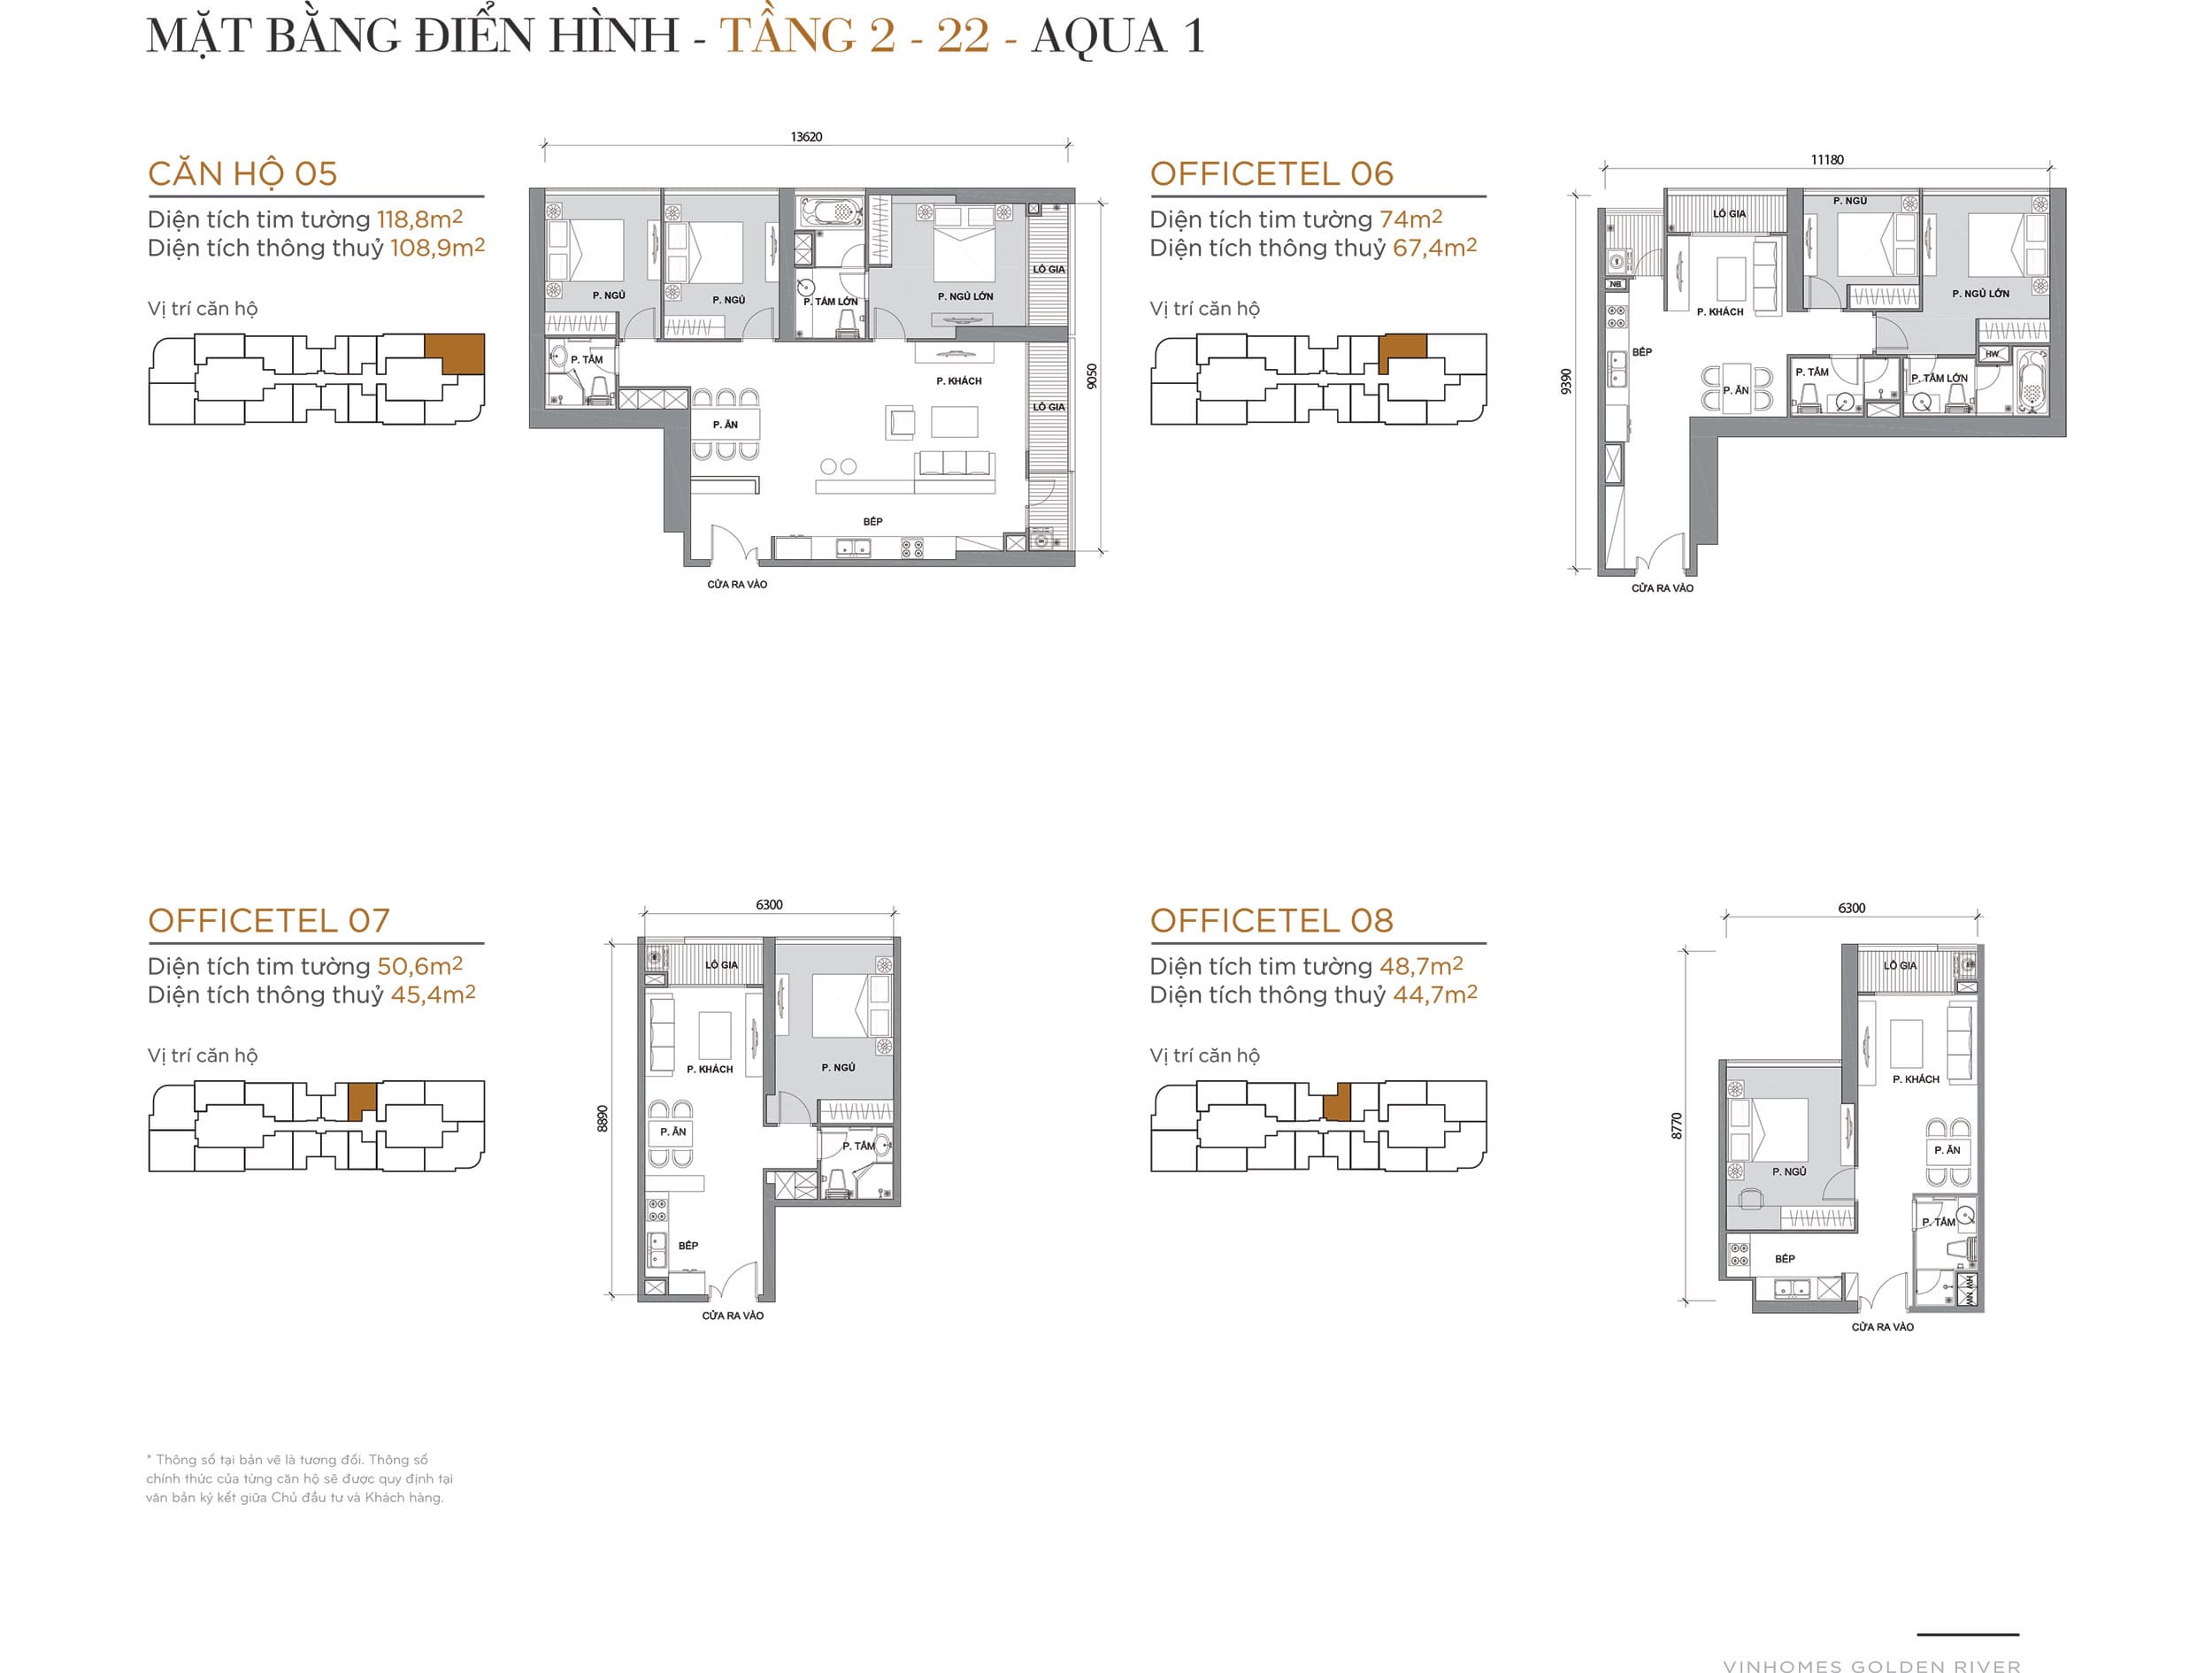 Layout thiết kế điển hình Tầng 2 đến Tầng 22 Tòa Aqua 1 loại căn hộ 05, Officetel 06, Officetel 07, Officetel 08.